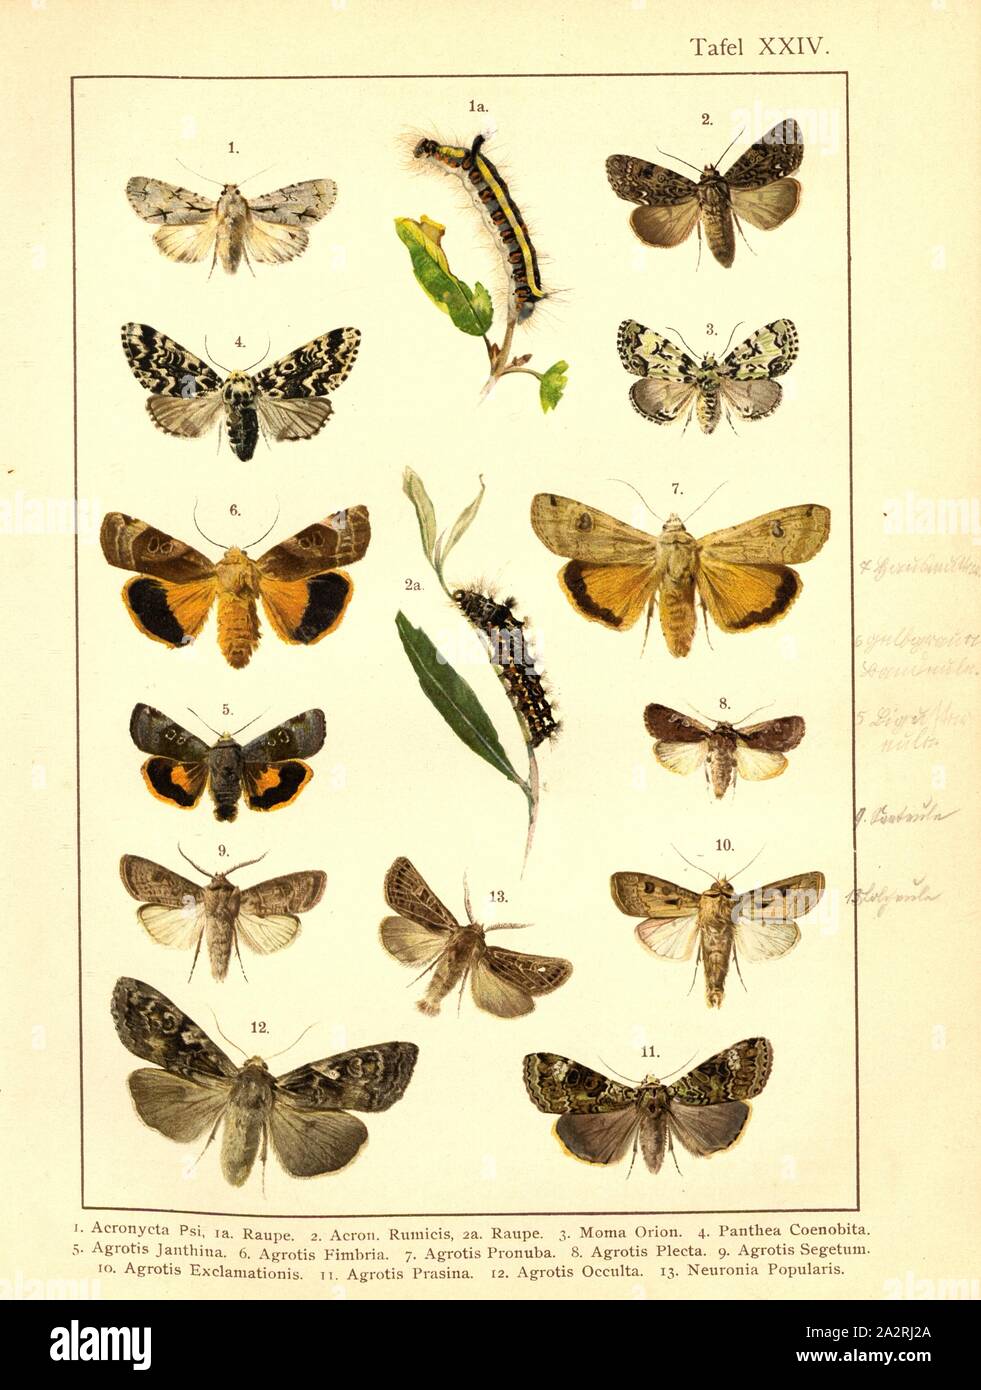 Butterflies and caterpillars in Central Europe 10, Acronycta Psi, Acron., Rumicis, Moma Orion, Panthea Coenobita, Agrotis Janthina, Agrotis Fimbria, Agrotis Pronuba, Agrotis Plecta, Agrotis Segetum, Agrotis Exclamationis, Agrotis Prasina, Agrotis Occulta, Neuronia Popularis, Plate XXIV, after p. 128, Deuchert, Heinrich (del. ad. nat.); Slocombe, A. (del. ad nat.), 1893, Max Korb; Heinrich Deuchert; A. Slocombe: Die Schmetterlinge Mittel-Europas: Darstellung und Beschreibung der hauptsächlichen mitteleuropäischen Schmetterlinge nebst Anleitung, dieselben zu fangen oder zu züchten und eine Stock Photo